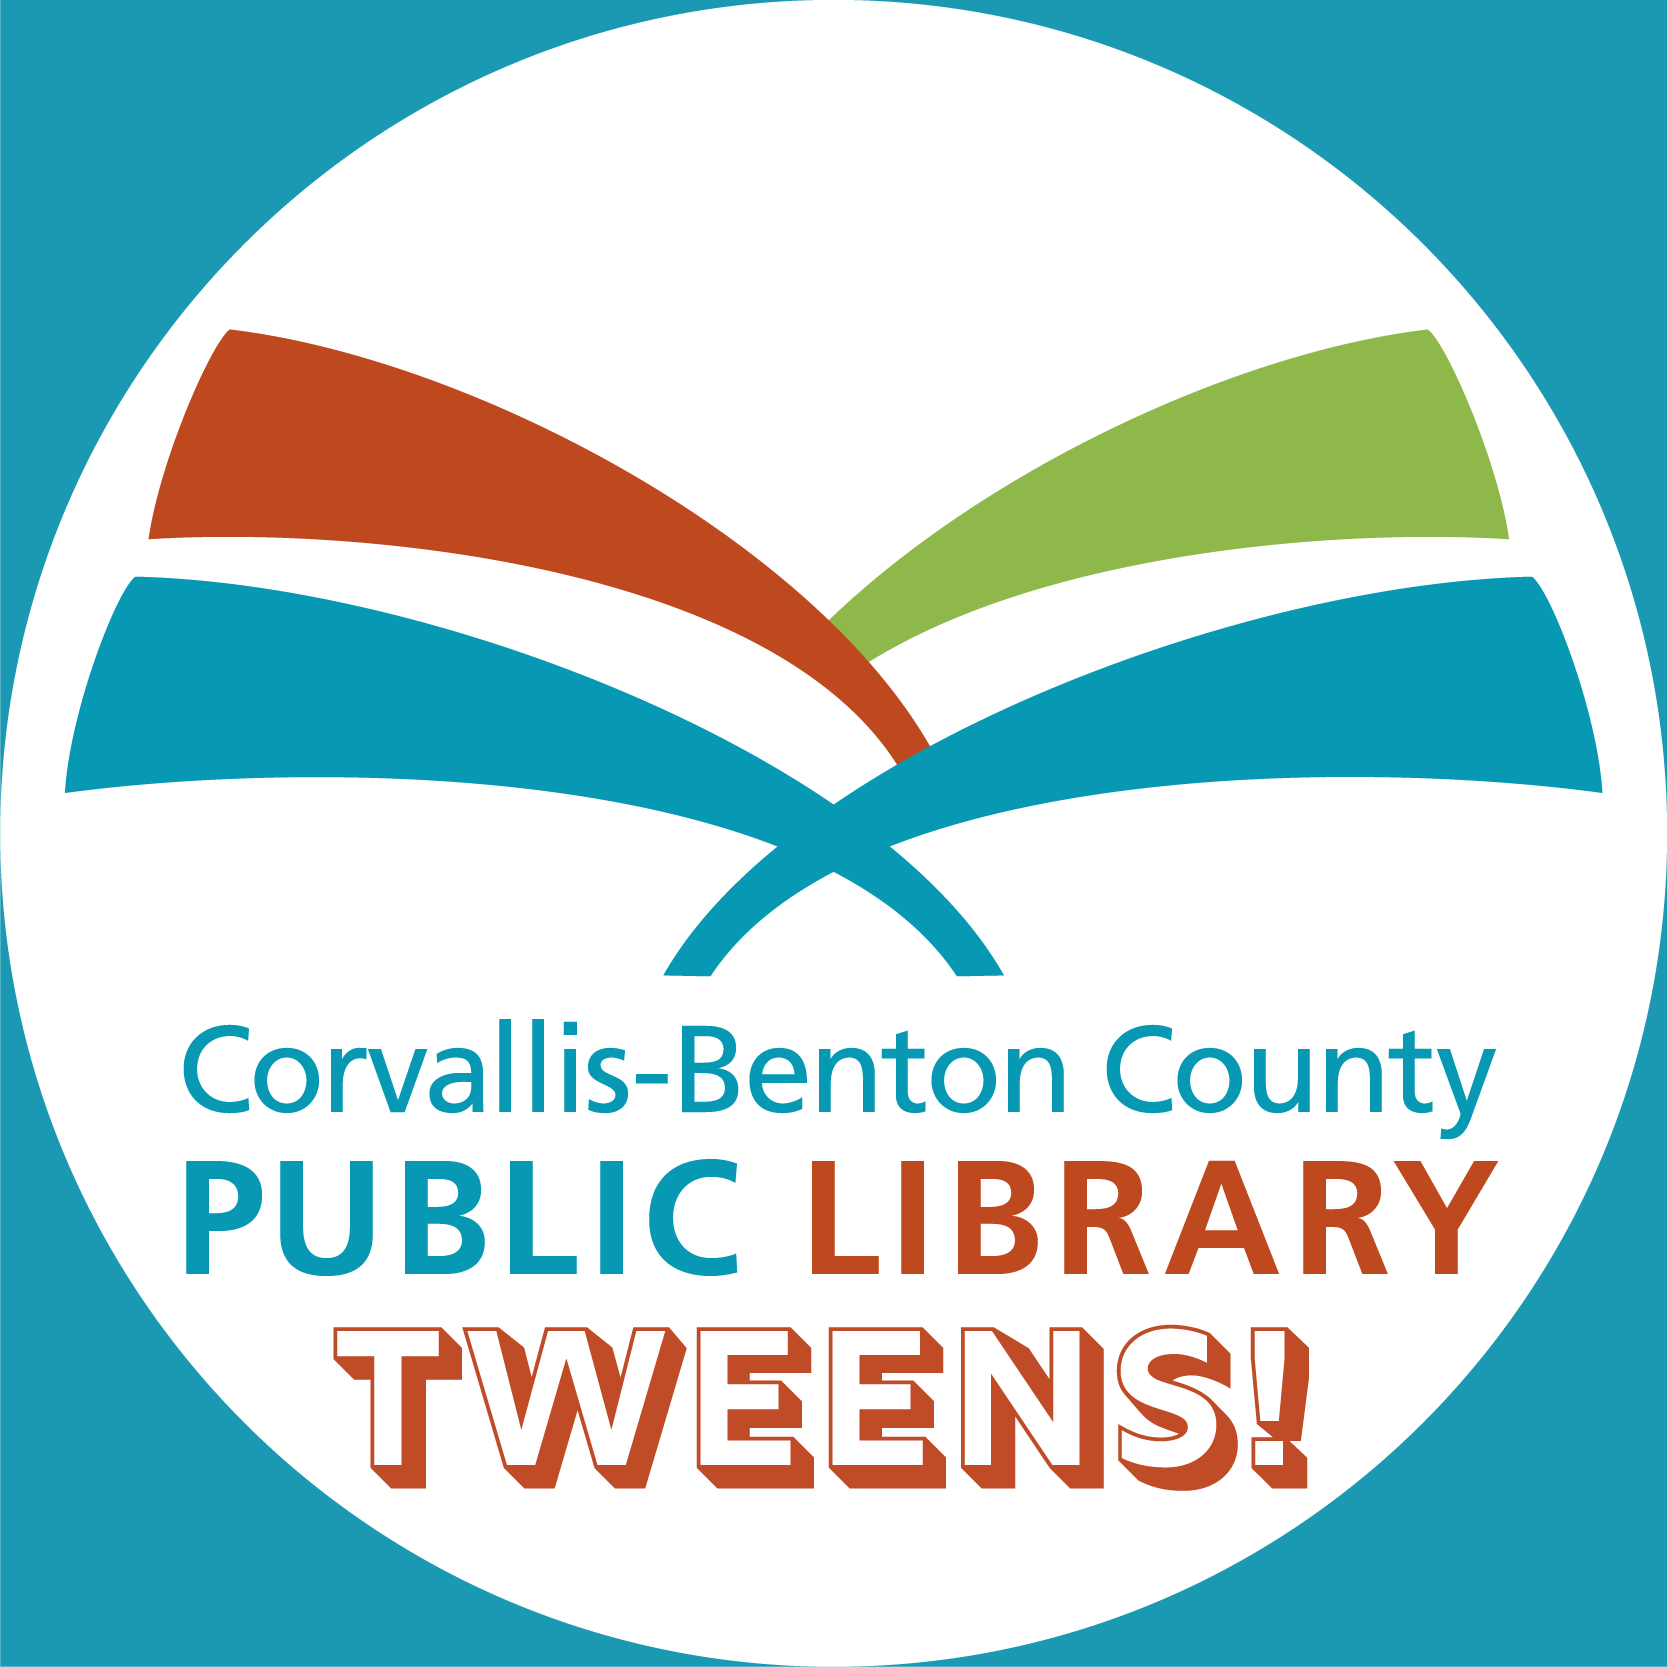 Corvallis-Benton County Public Library Tweens logo